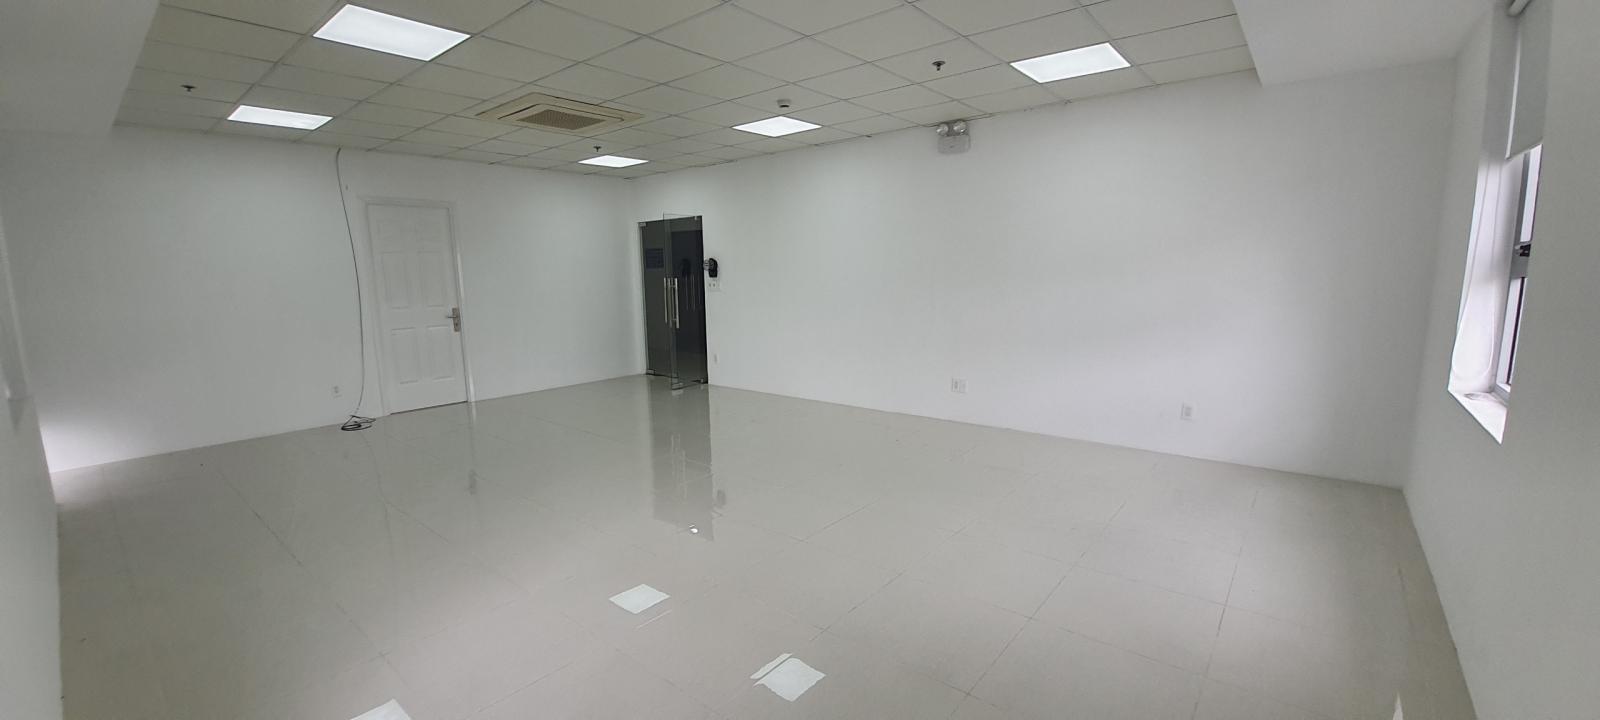 Office cho thuê tại Luxcity 528 Huỳnh Tấn Phát trung tâm quận 7 .LH 0909448284 Hiền 